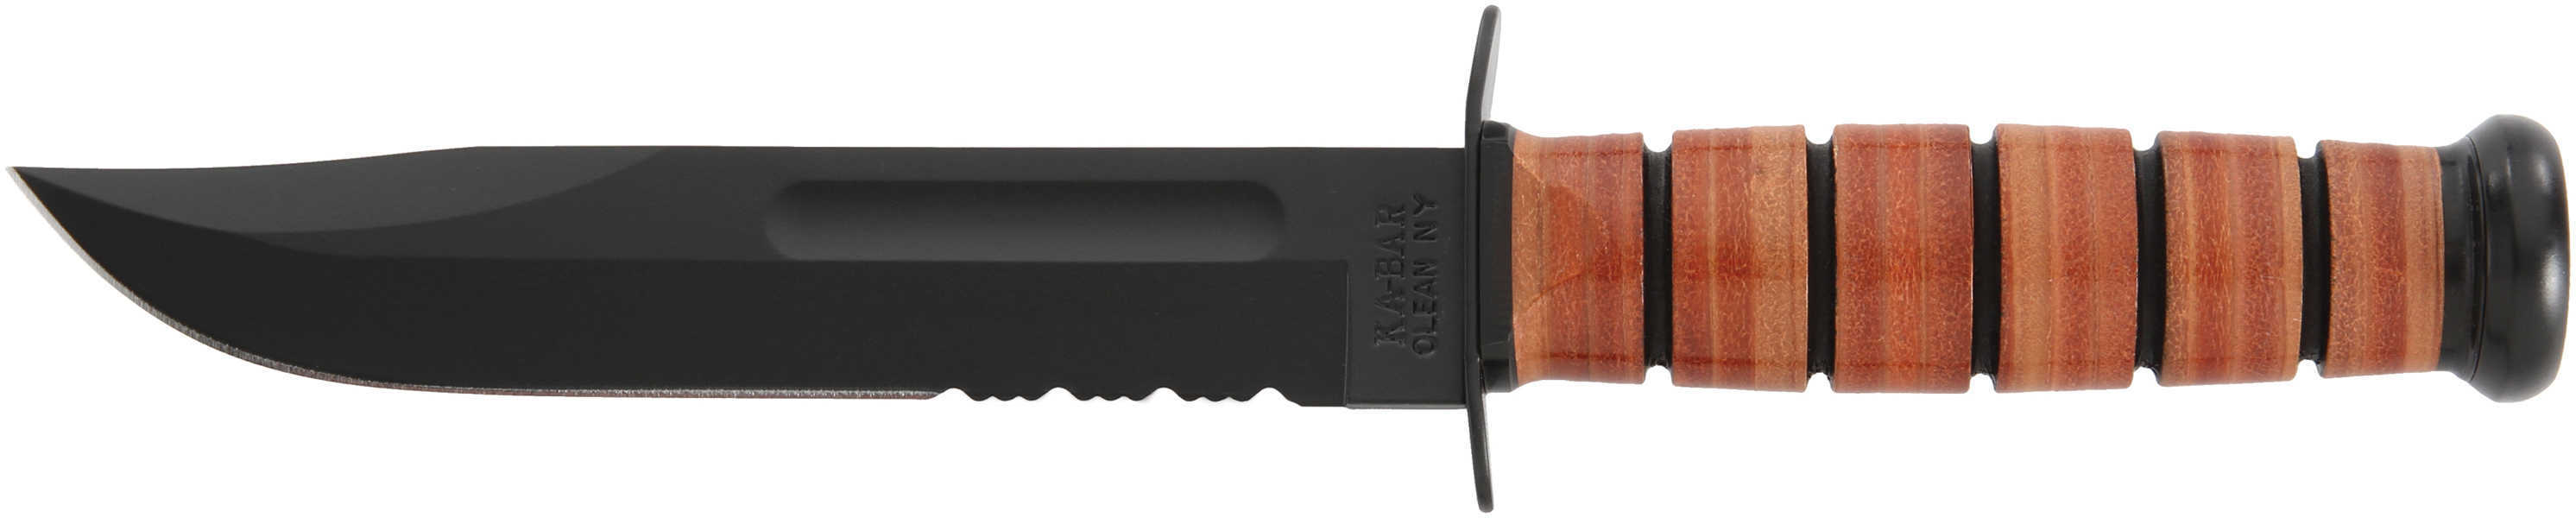 KA-BAR Fighting/Utility Knife 7" SRRTD W/Leather Sheath Usmc